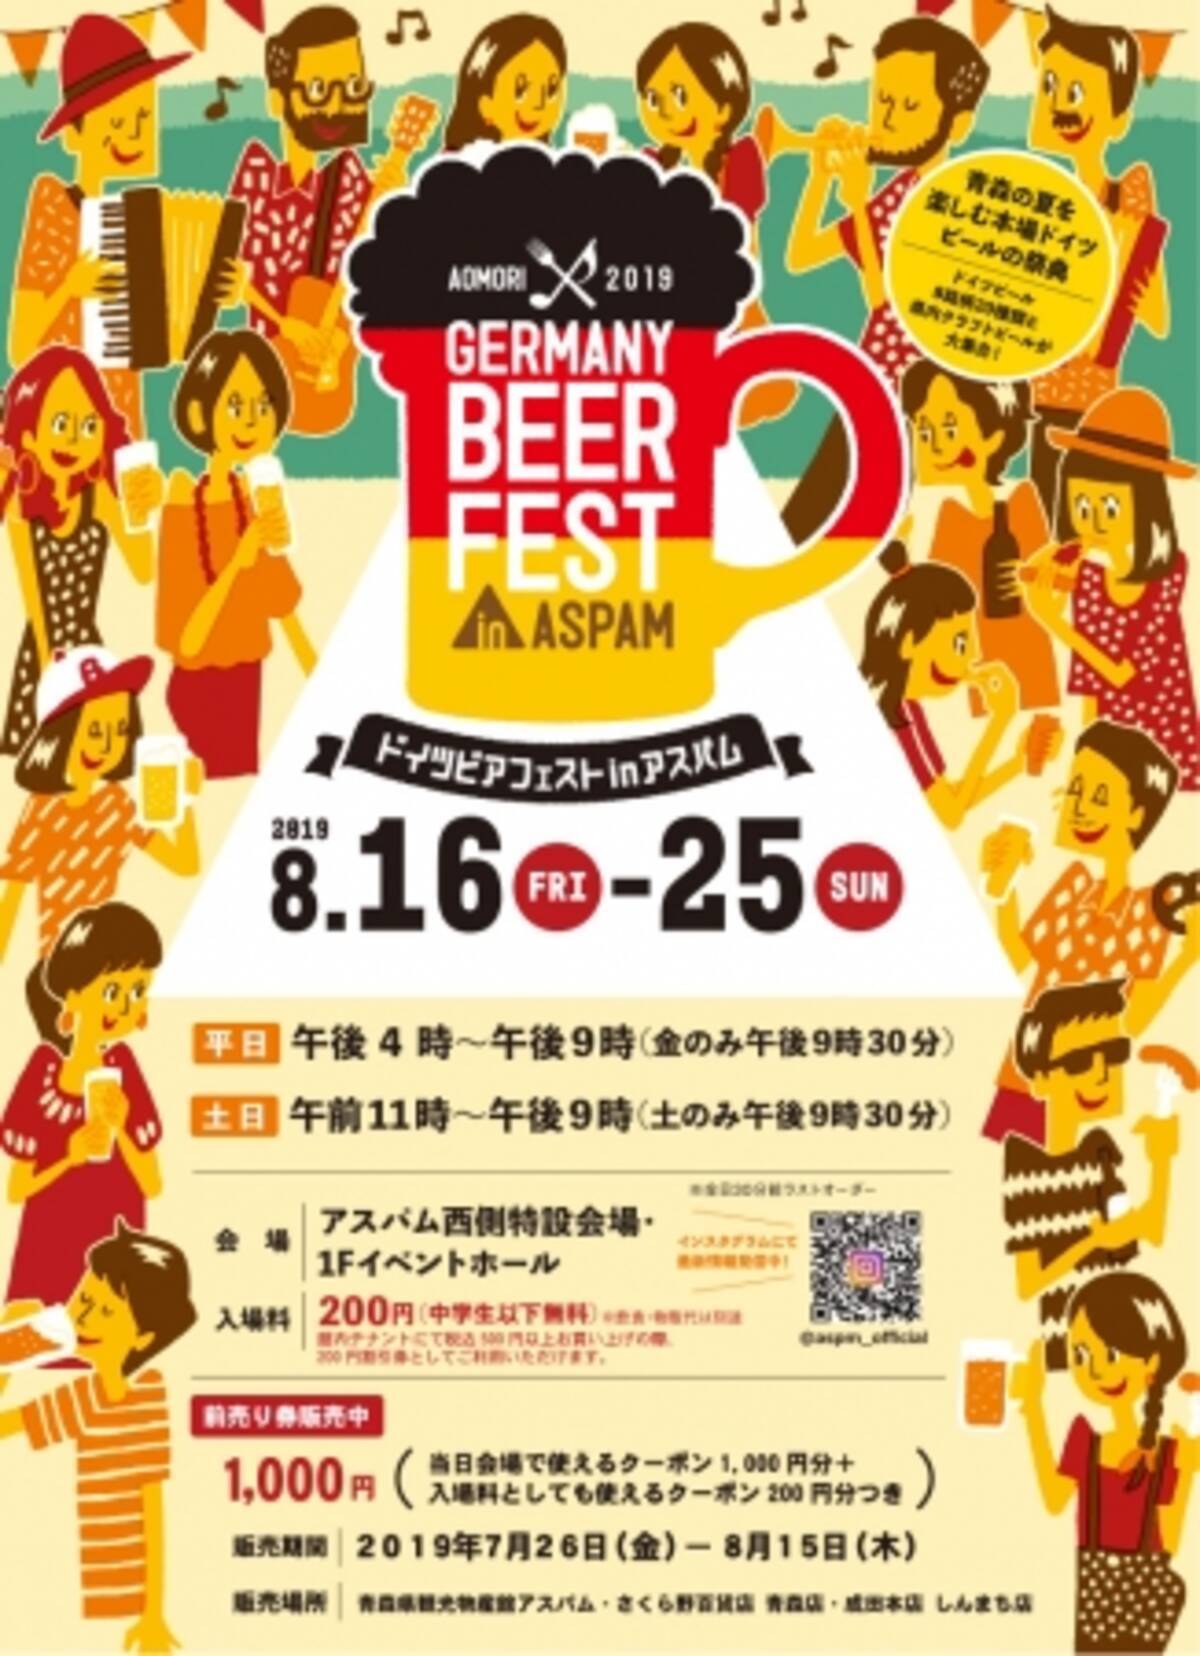 初開催 青森の夏を楽しむ本場ドイツビールの祭典 ドイツビアフェストinアスパム ドイツから直輸入した生ビールと相性抜群のフードメニュー ドイツ人バンドによる音楽で本物のドイツの雰囲気を堪能しよう 19年8月13日 エキサイトニュース